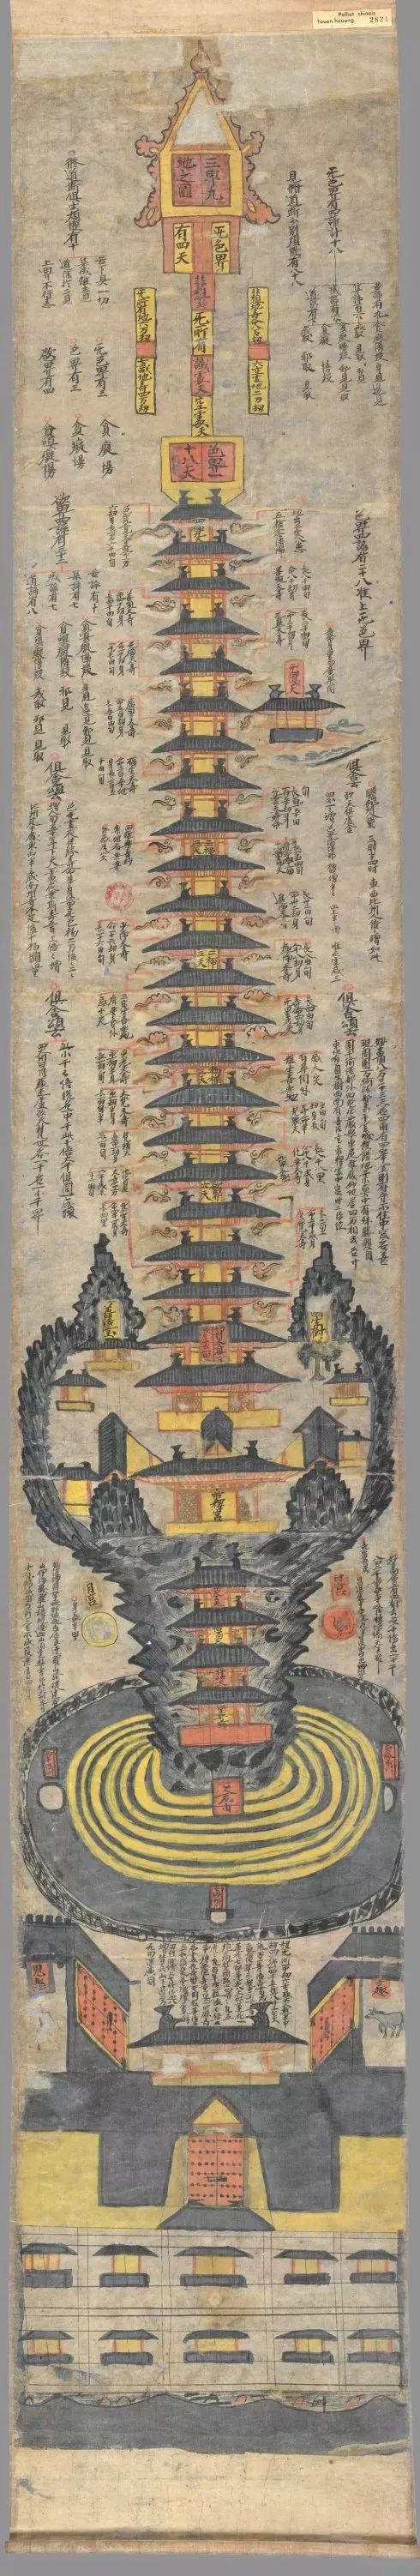 《三界九地之图》,是目前发现的世界上最早最完整的佛教